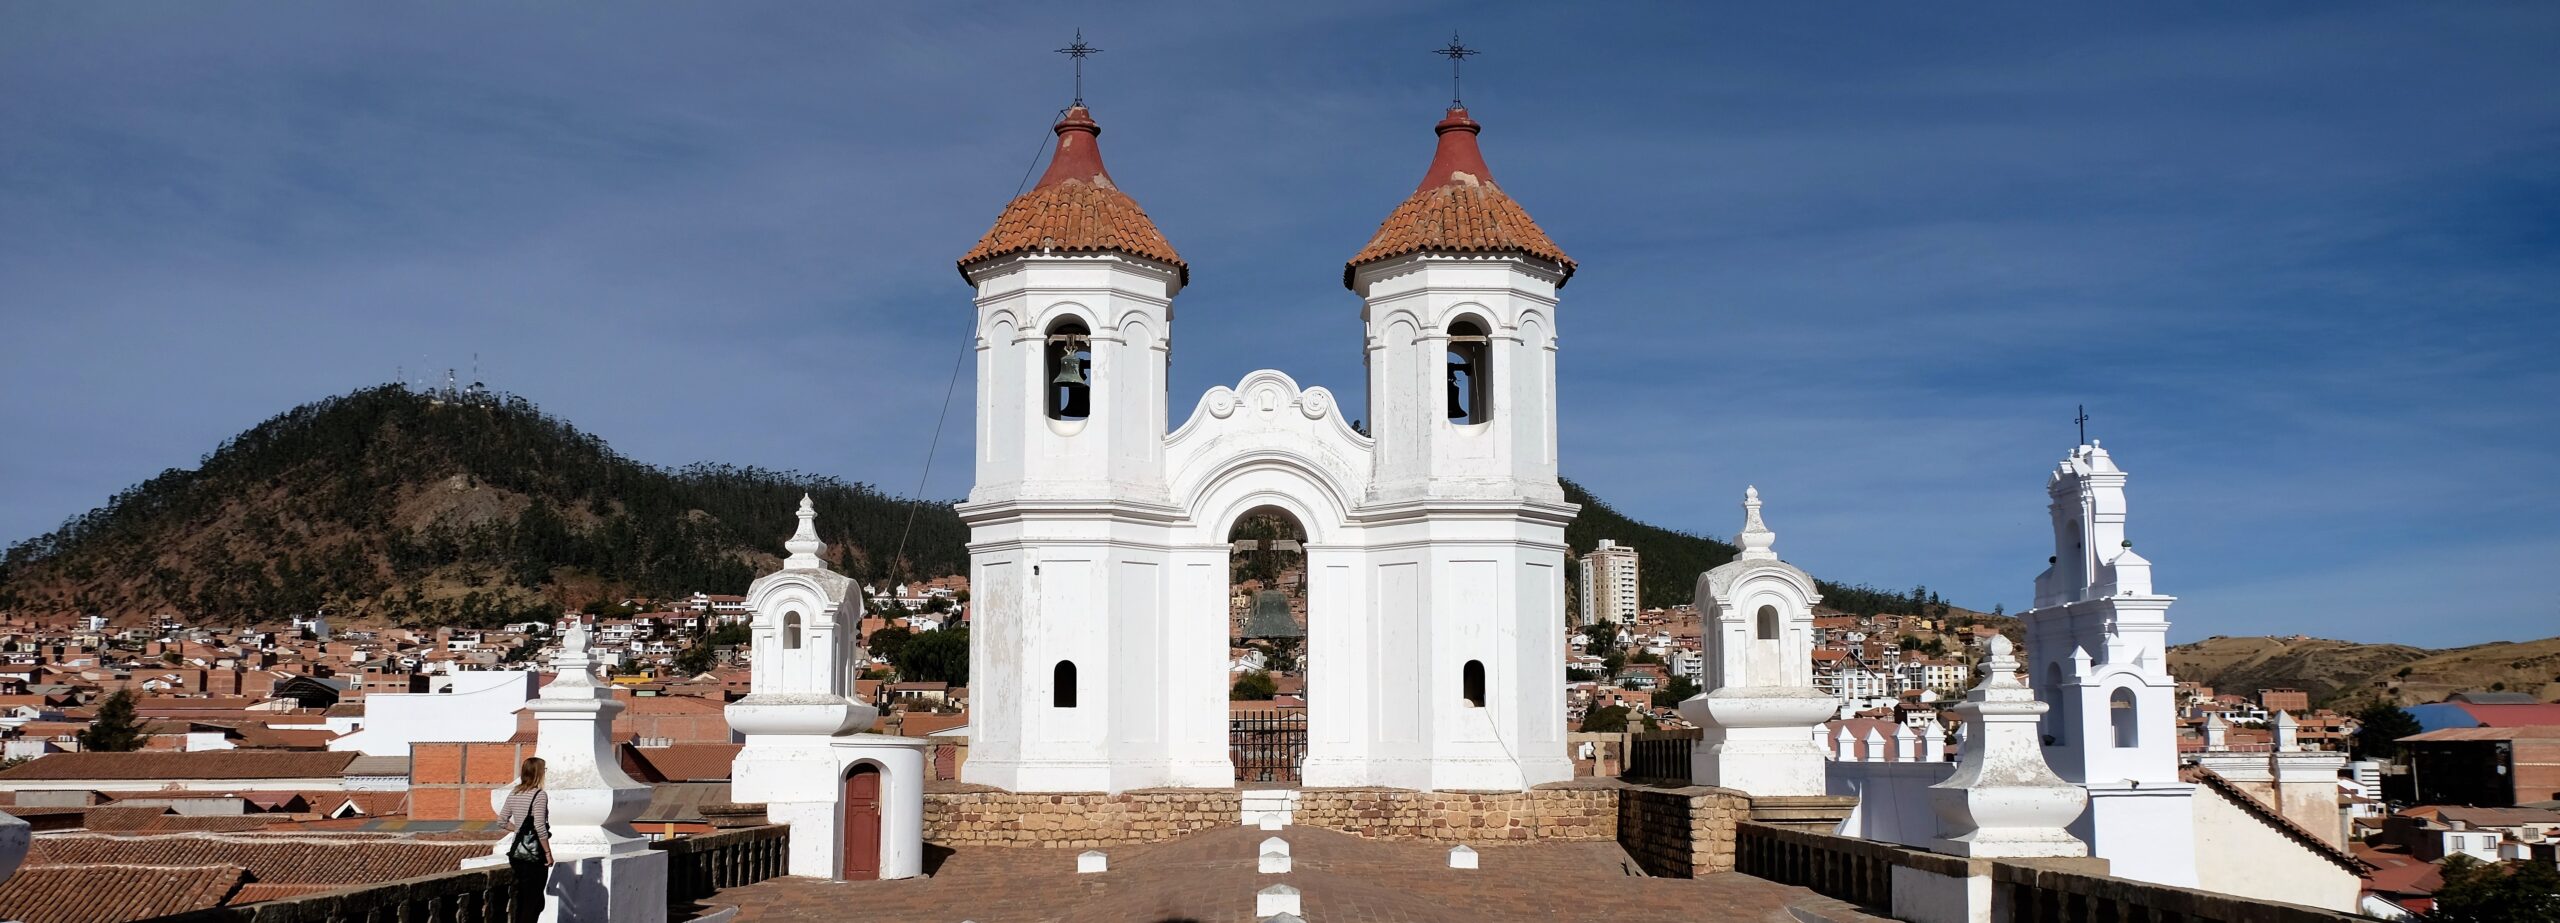 Convent of San Felipe de Neri